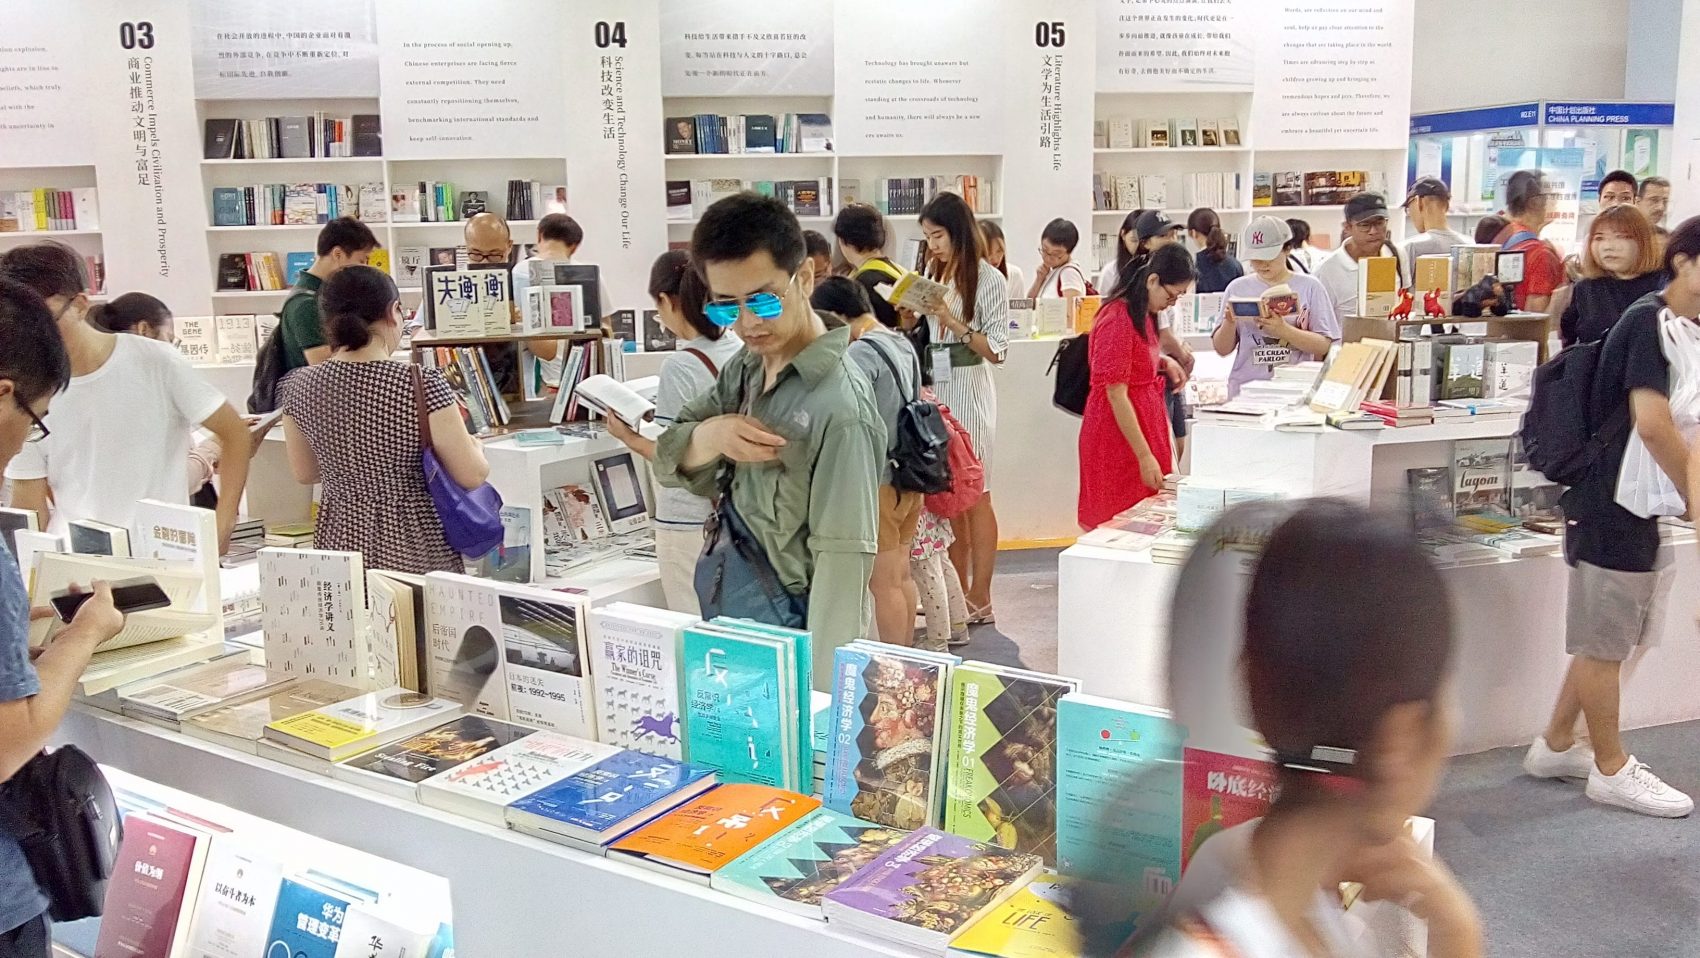 Alto investimento em educação, além do desenvolvimento econômico, fez do país um grande consumidor de livros e de bens culturais